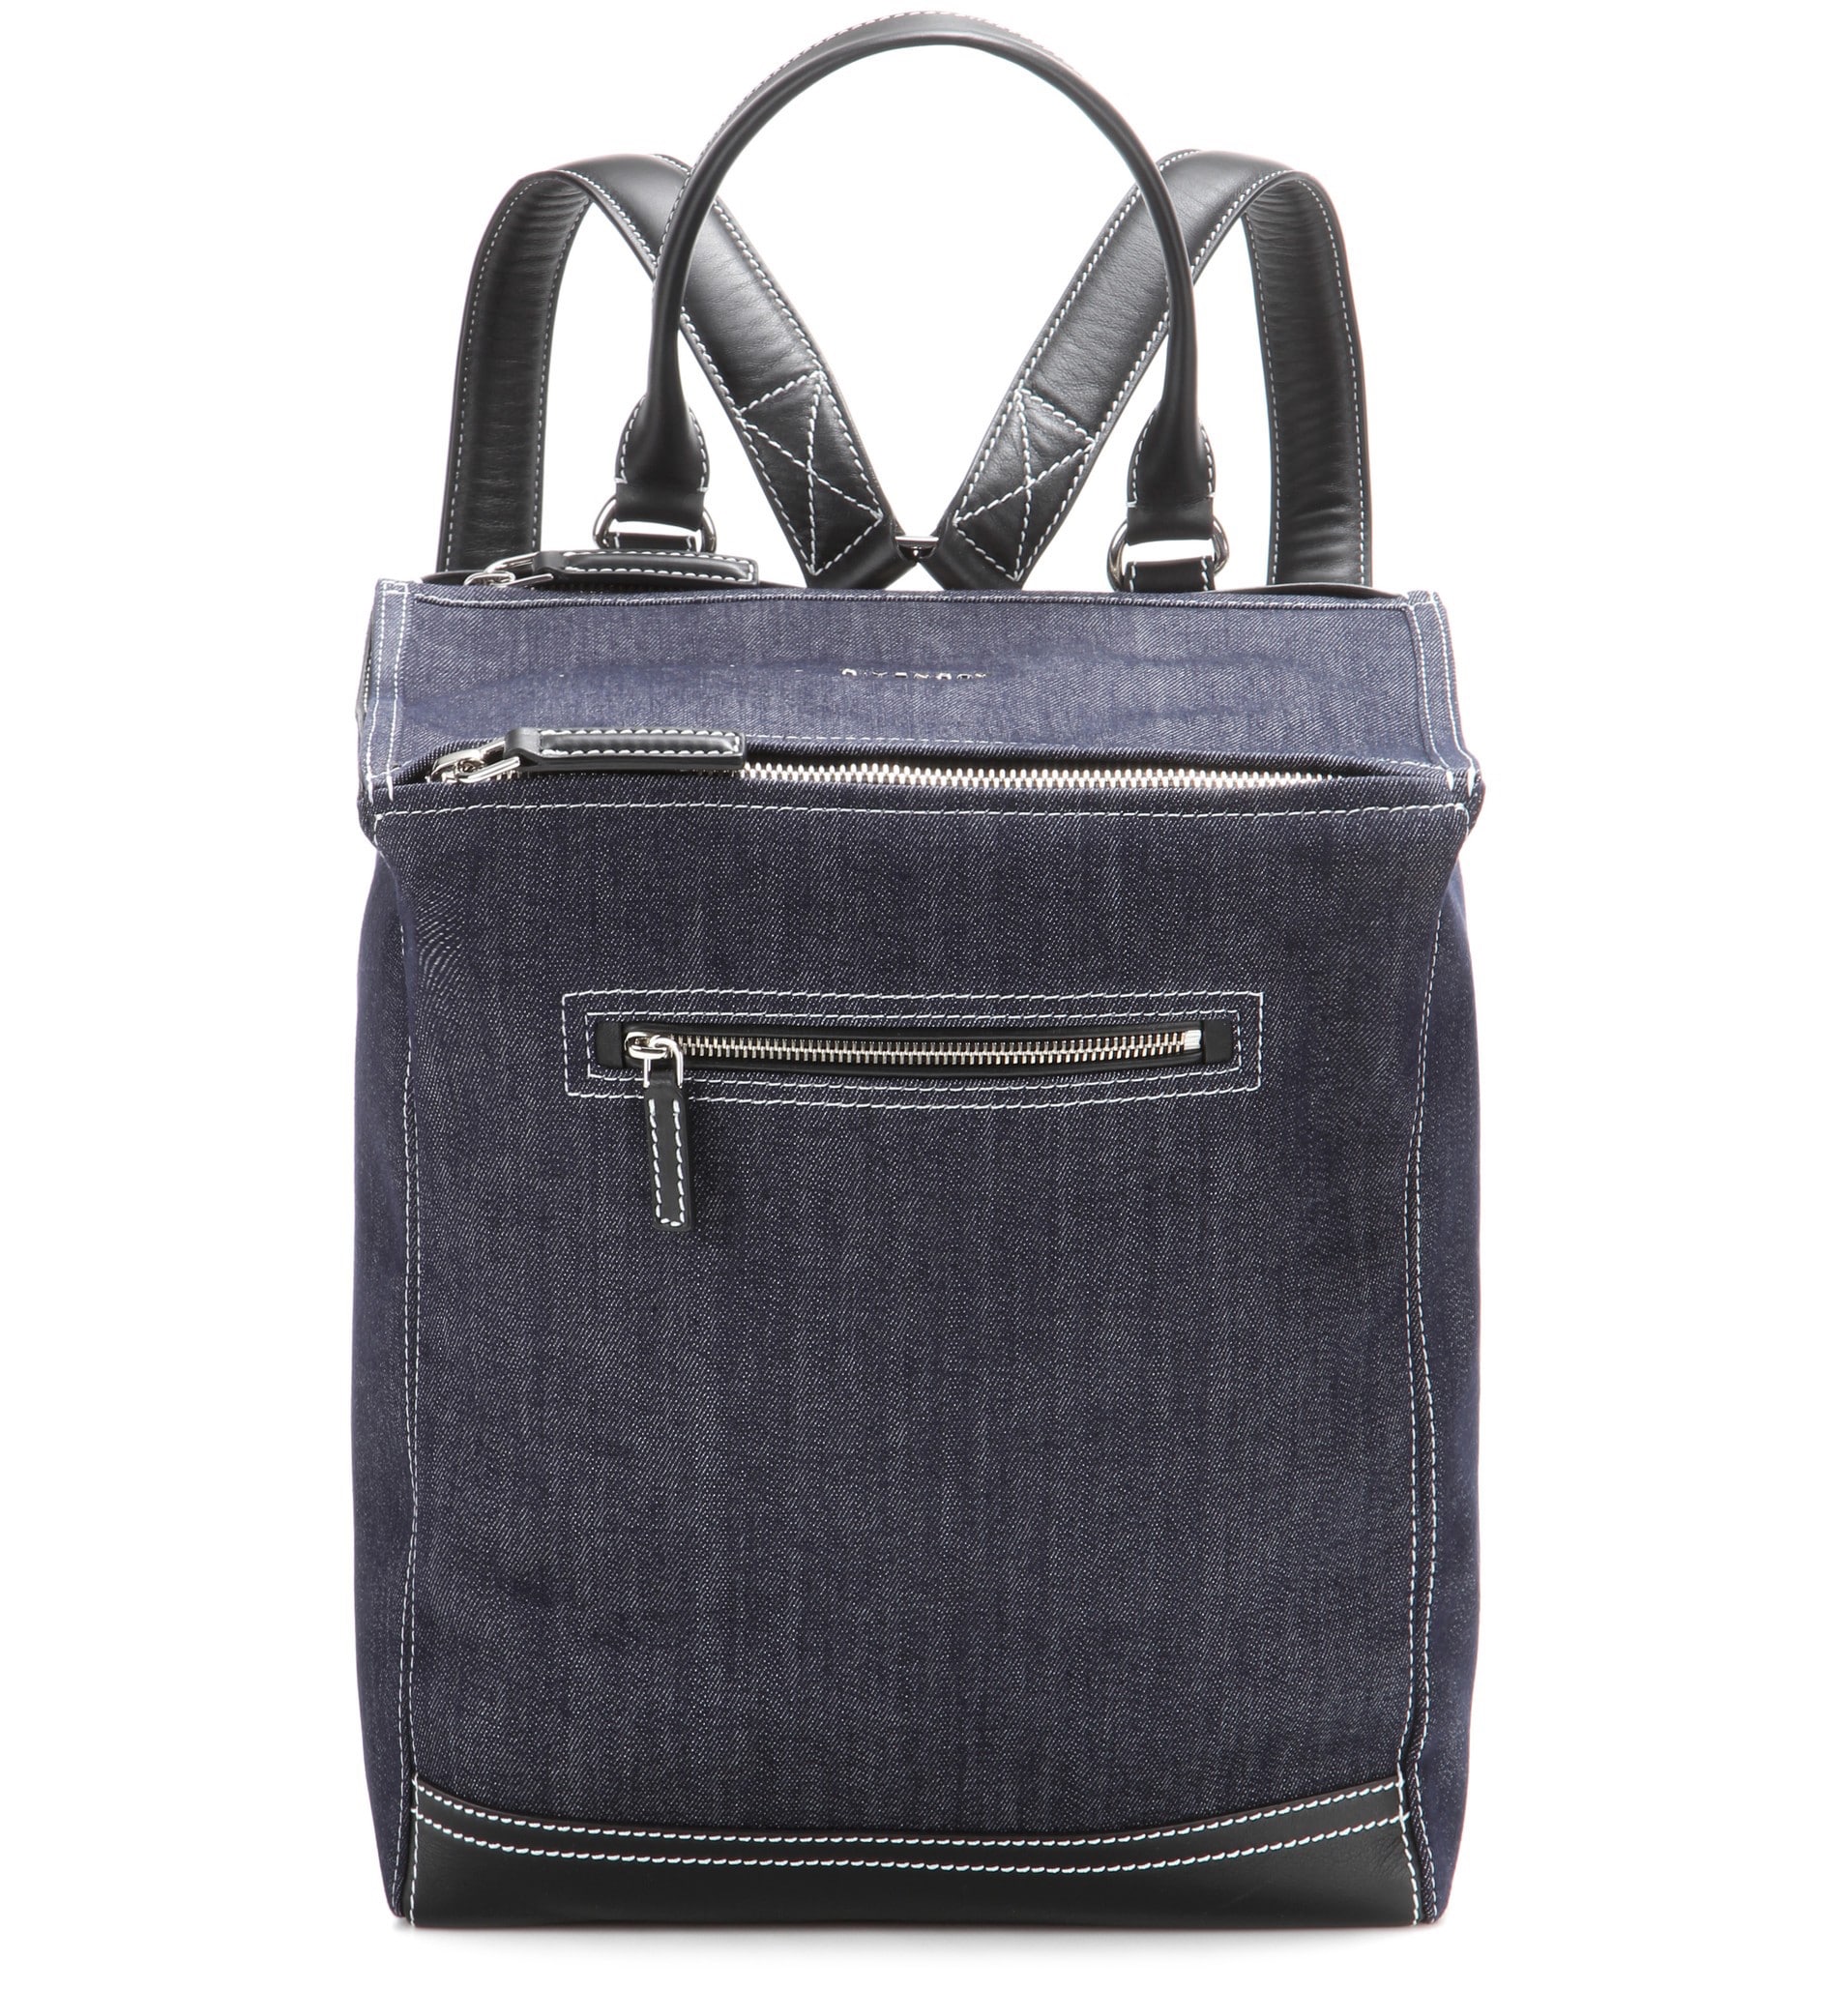 Givenchy Pandora Denim Backpack Bag